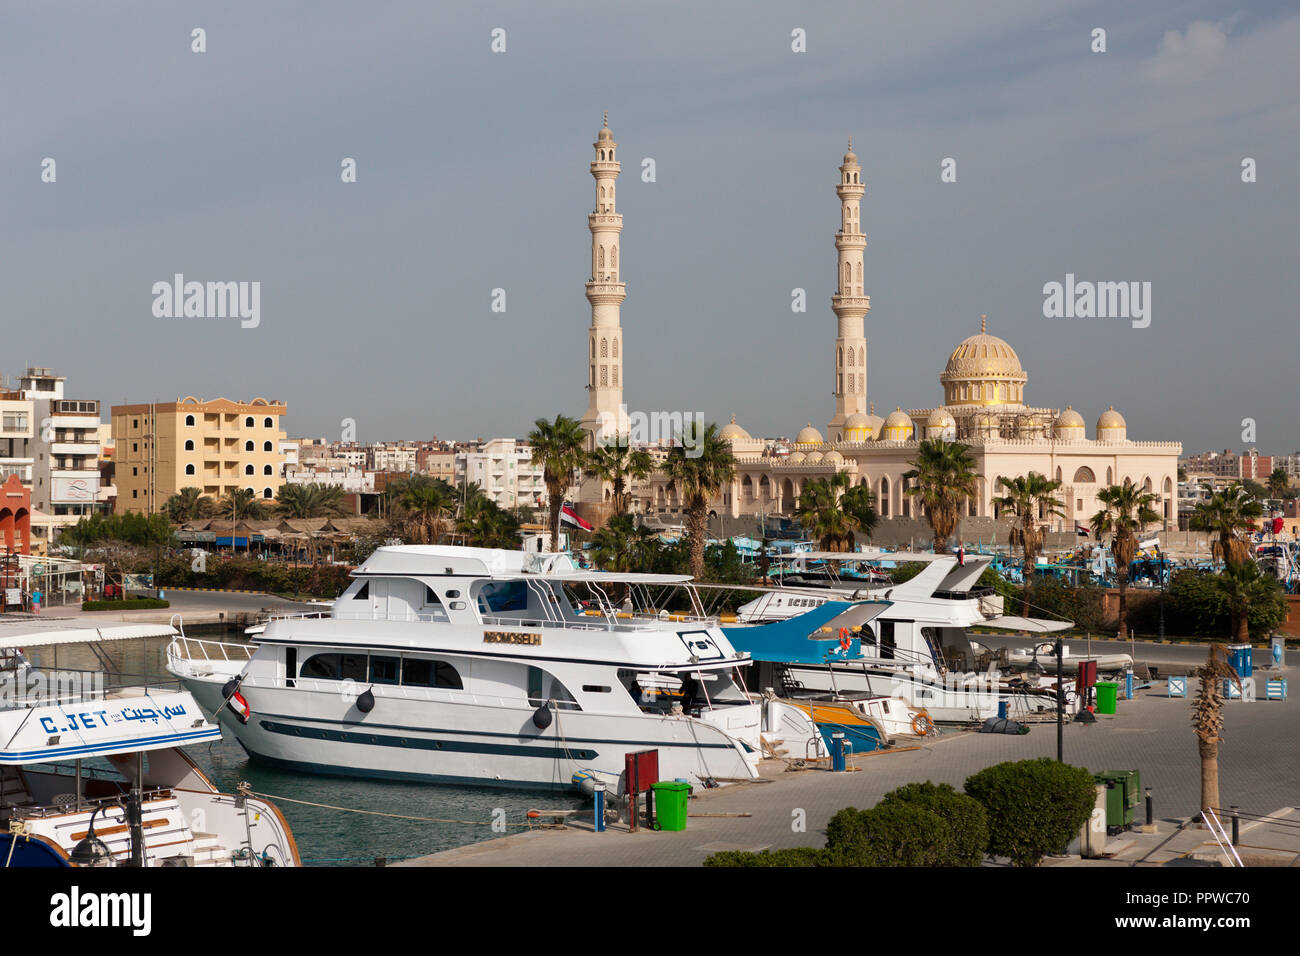 Los barcos de buceo en el puerto deportivo de Hurghada, Mar Rojo, Egipto Foto de stock